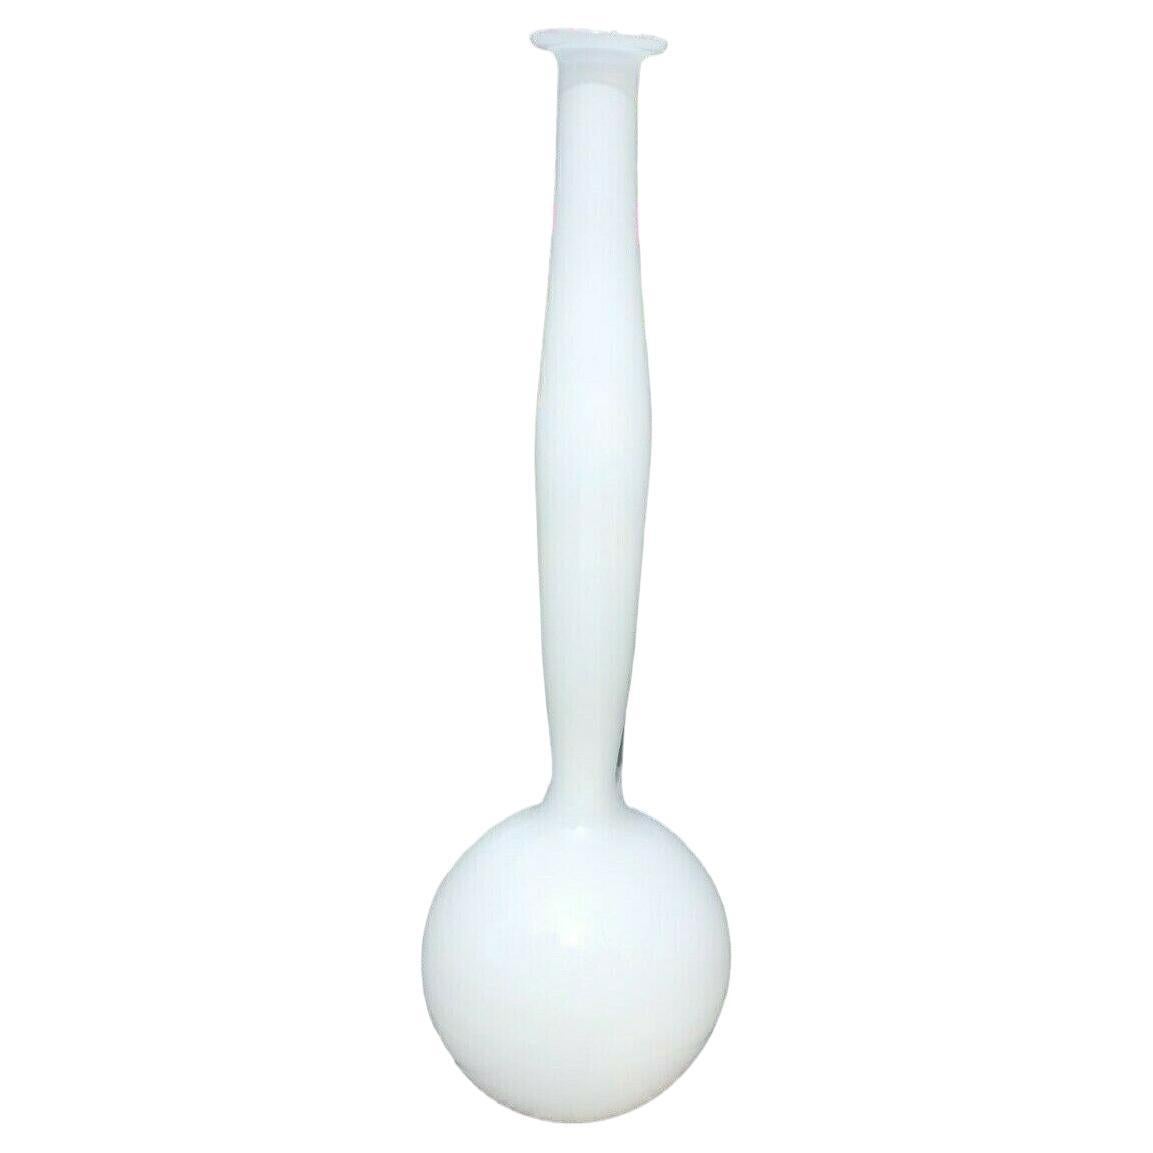 Anne Nilsson, signierte und nummerierte Orrefors Expo-Vase aus weißem Glas, weiß